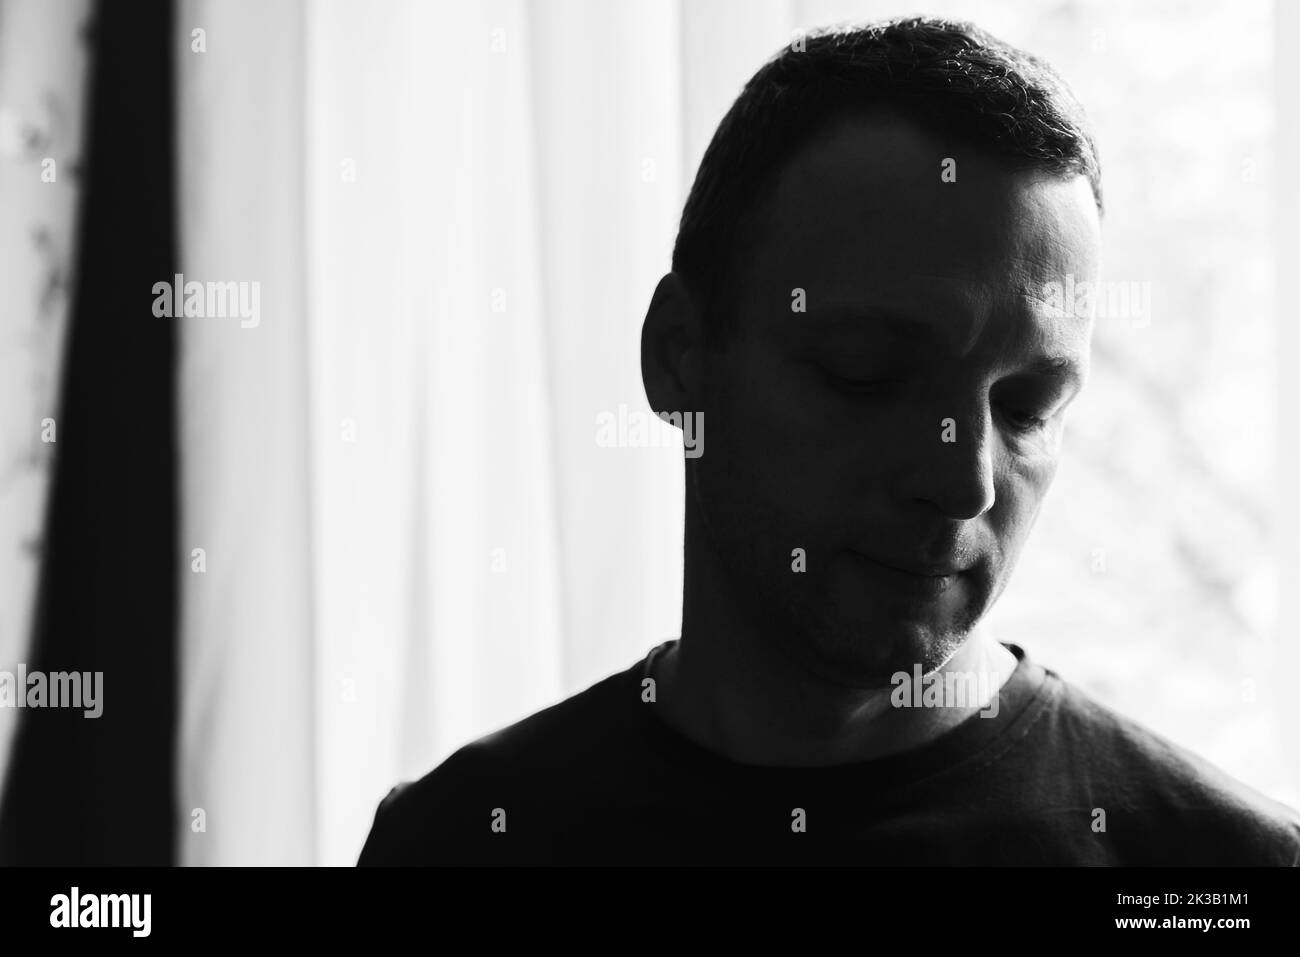 Retrato de estudio oscuro de un hombre caucásico adulto joven cerca de una ventana iluminada brillante, fotografía artística en blanco y negro con enfoque selectivo suave Foto de stock